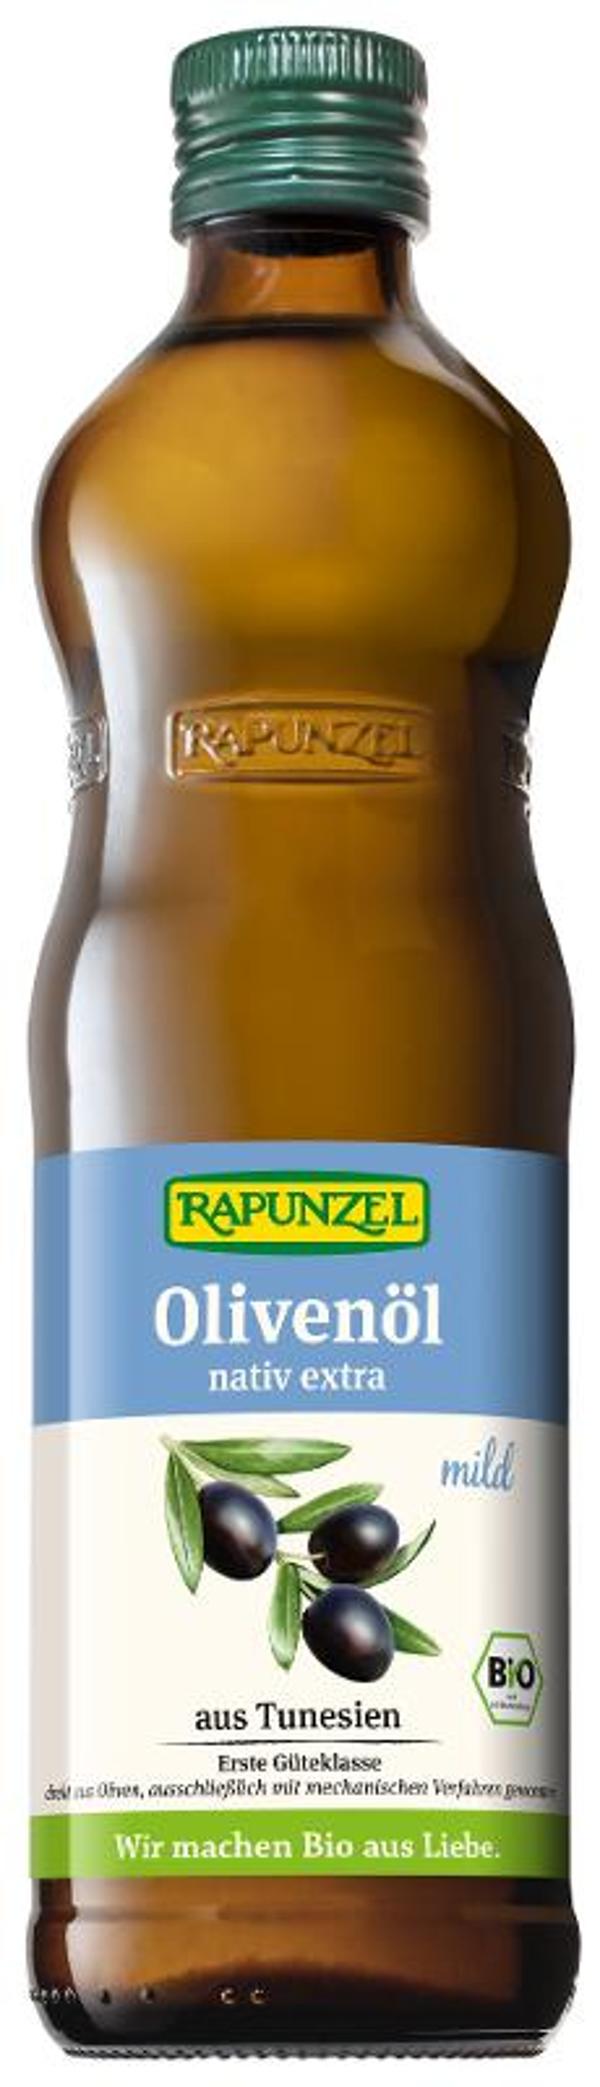 Produktfoto zu Olivenöl mild, nativ extra 0,5l